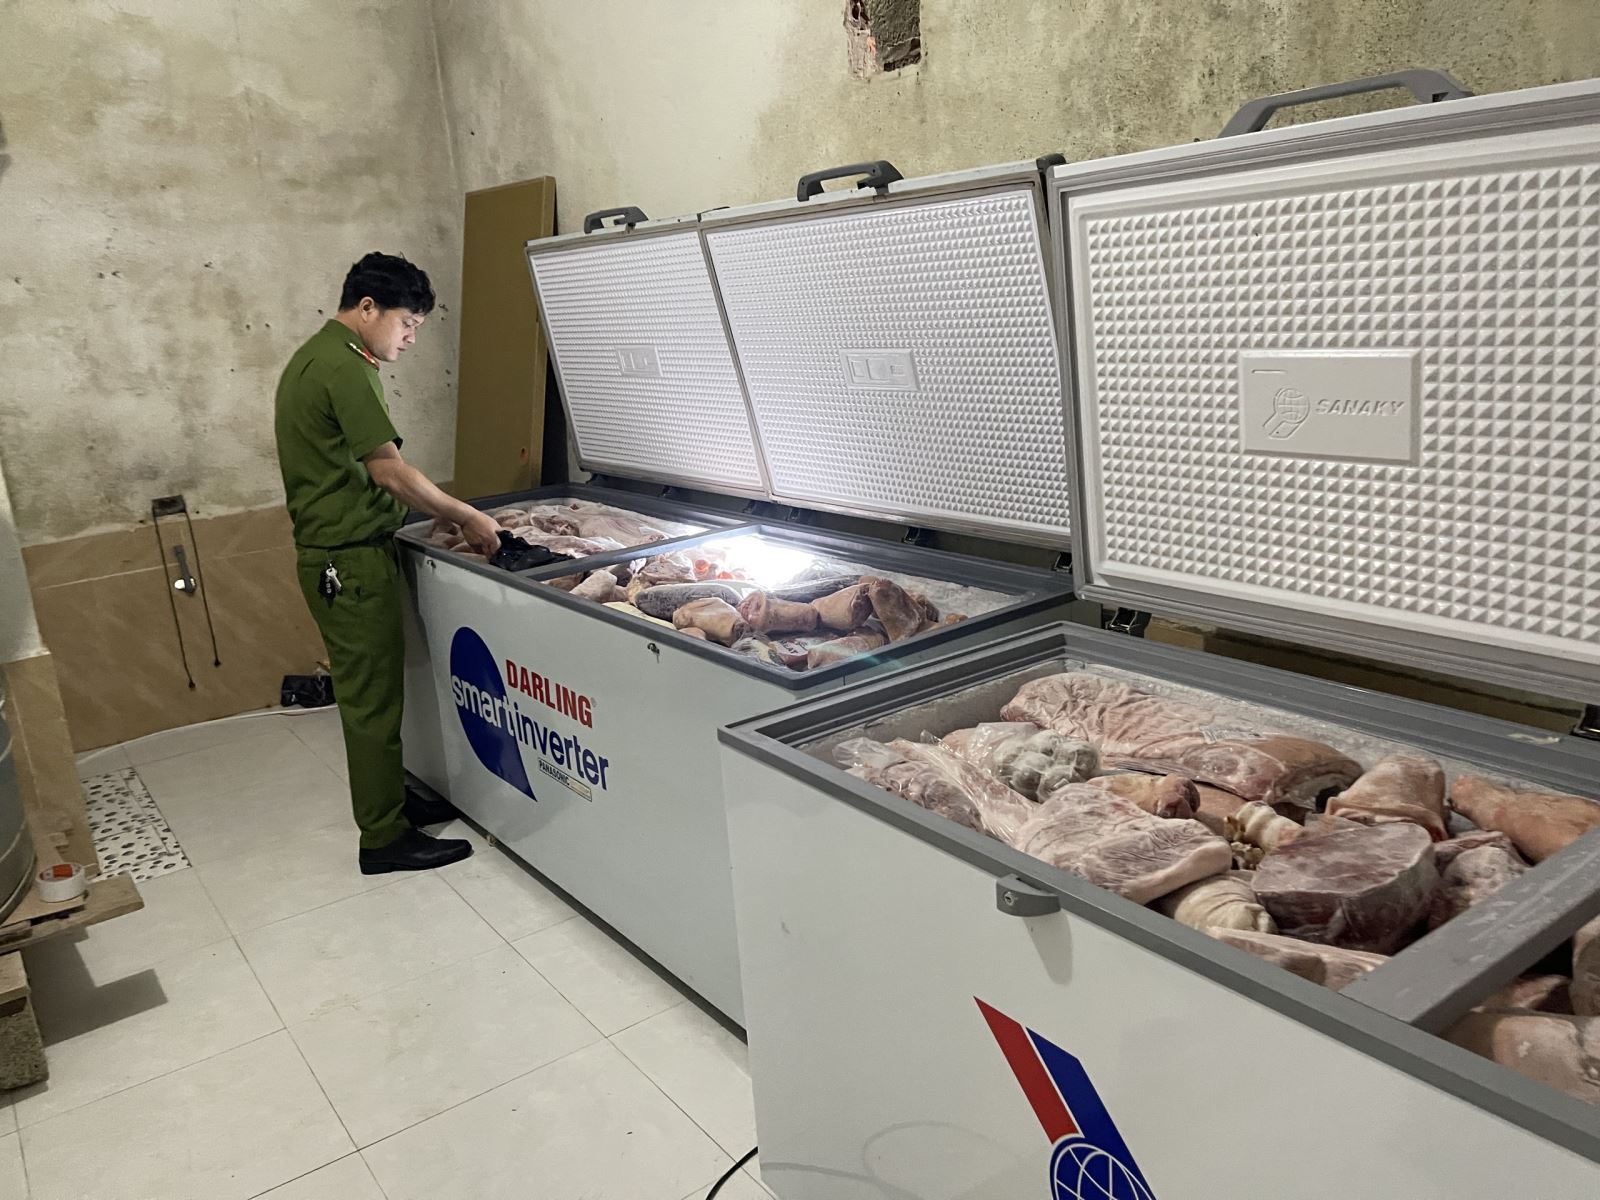 Lực lượng công an Thừa Thiên Huế phát hiện hơn 1 tấn thực phẩm gồm giò heo, ba chỉ rút xương, xương cùi bò, bắp bò, bắp trâu...không rõ nguồn gốc ở kho hàng hóa thực phẩm ở xã Lộc An, huyện Phú Lộc.